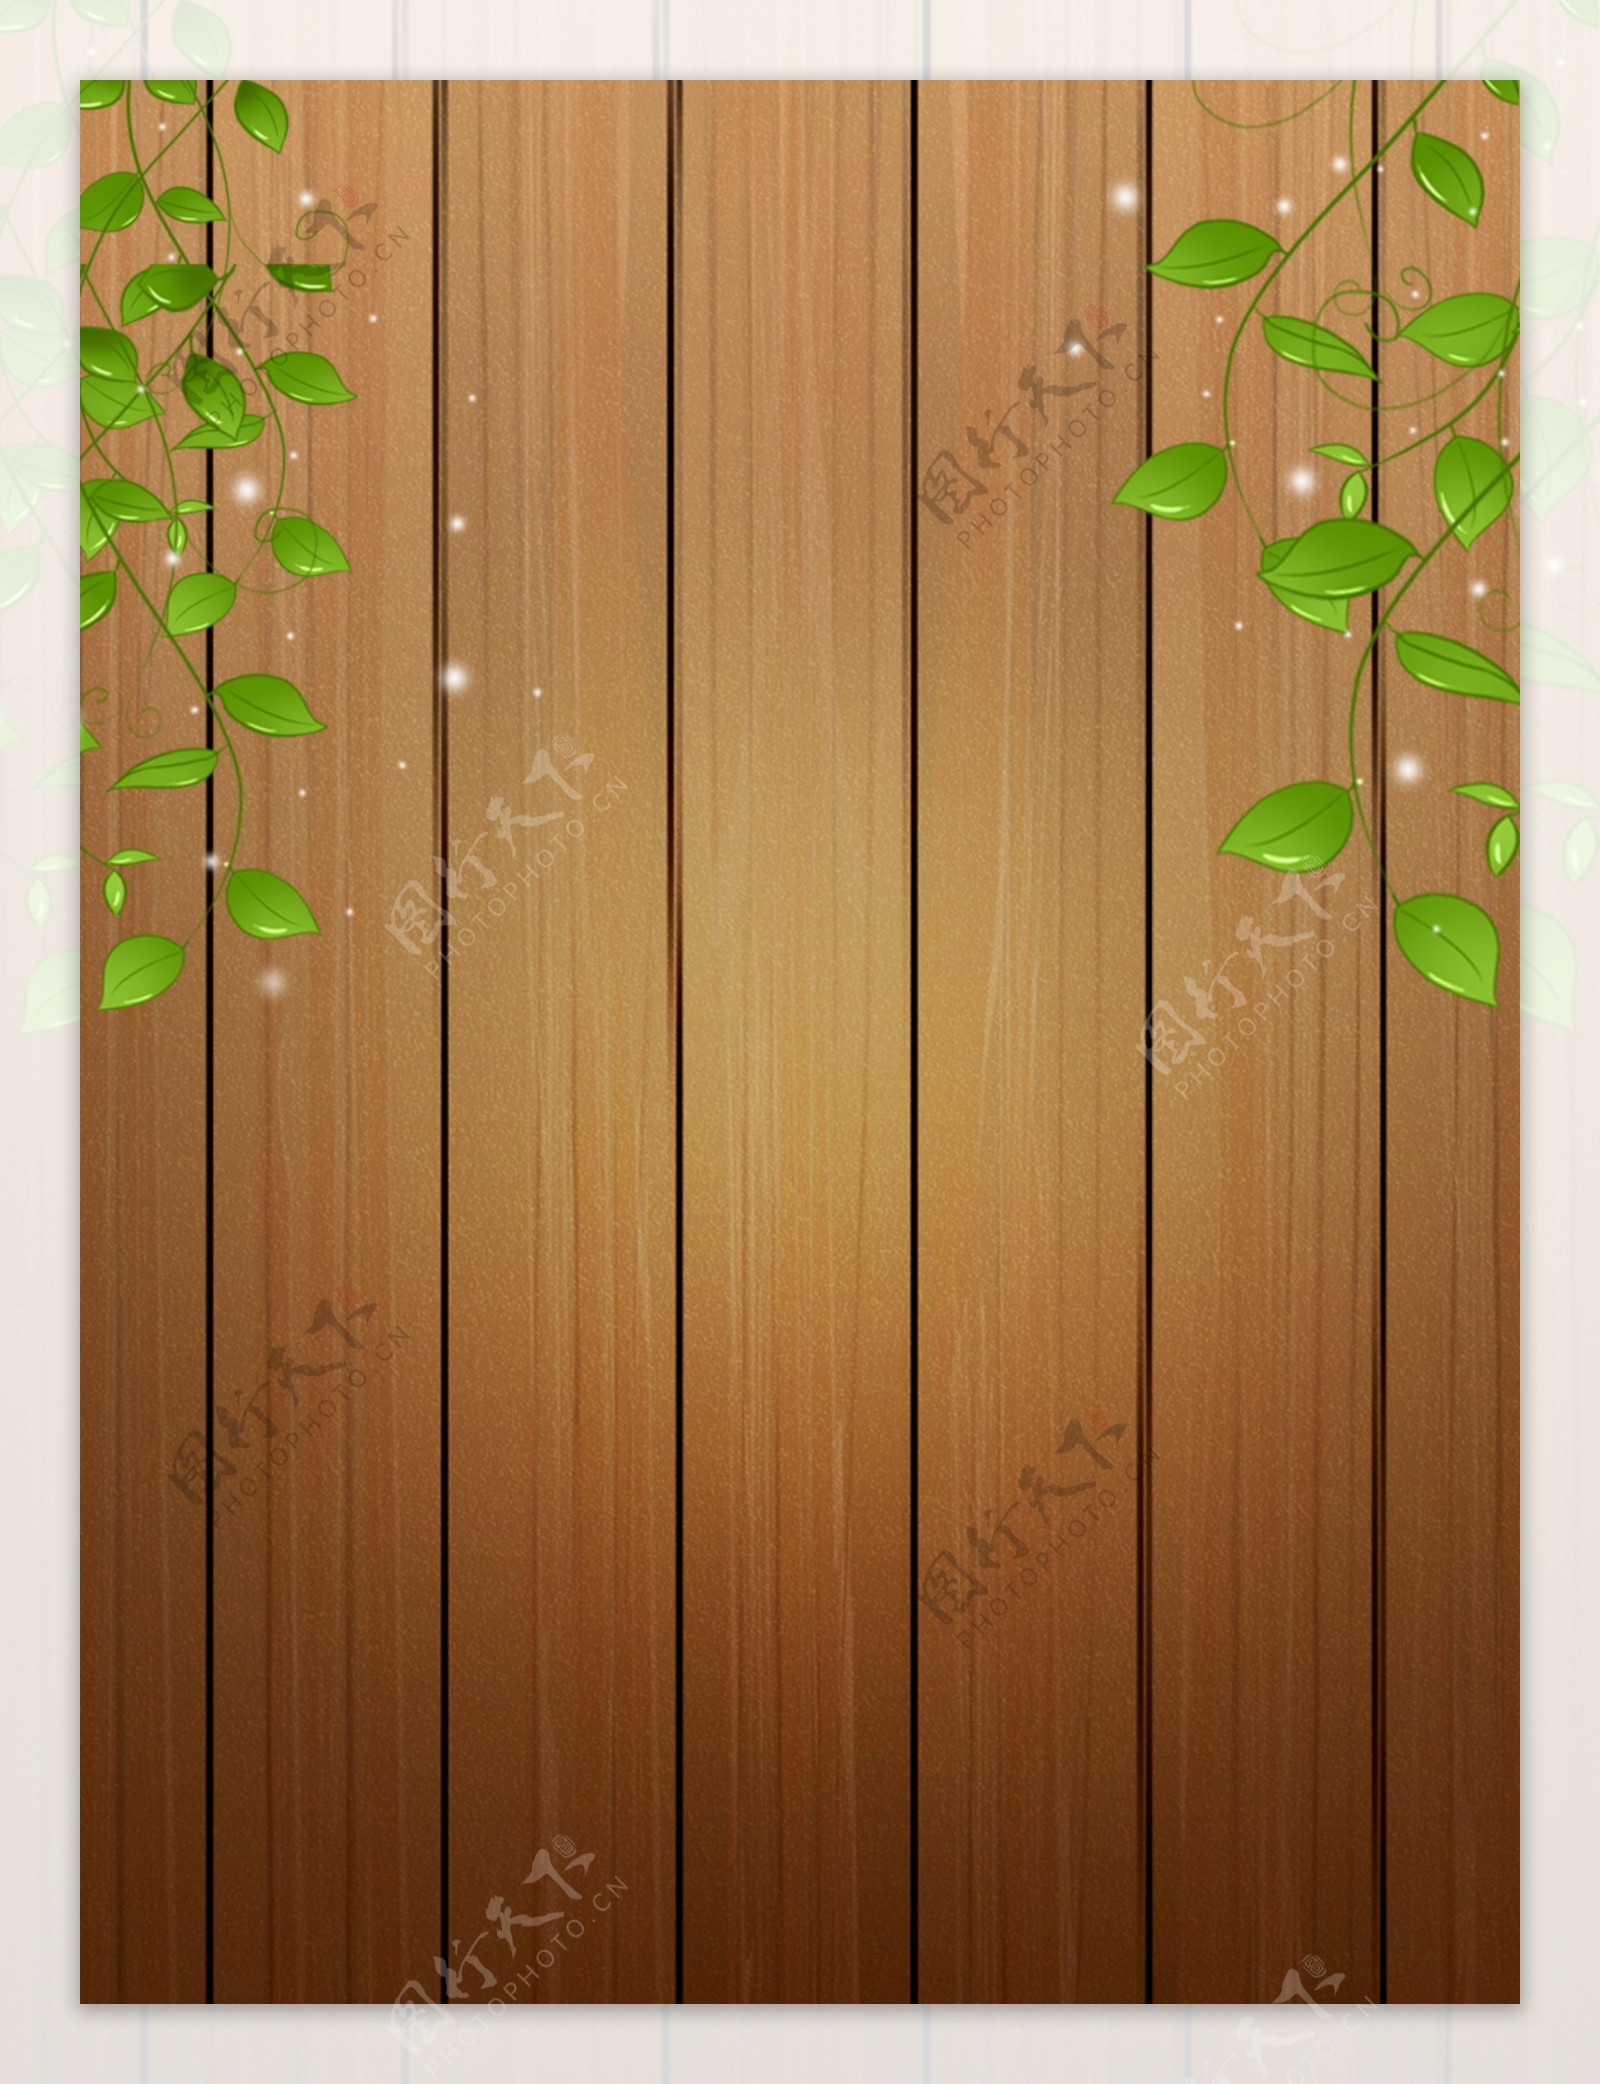 木纹木板纹理木板纹